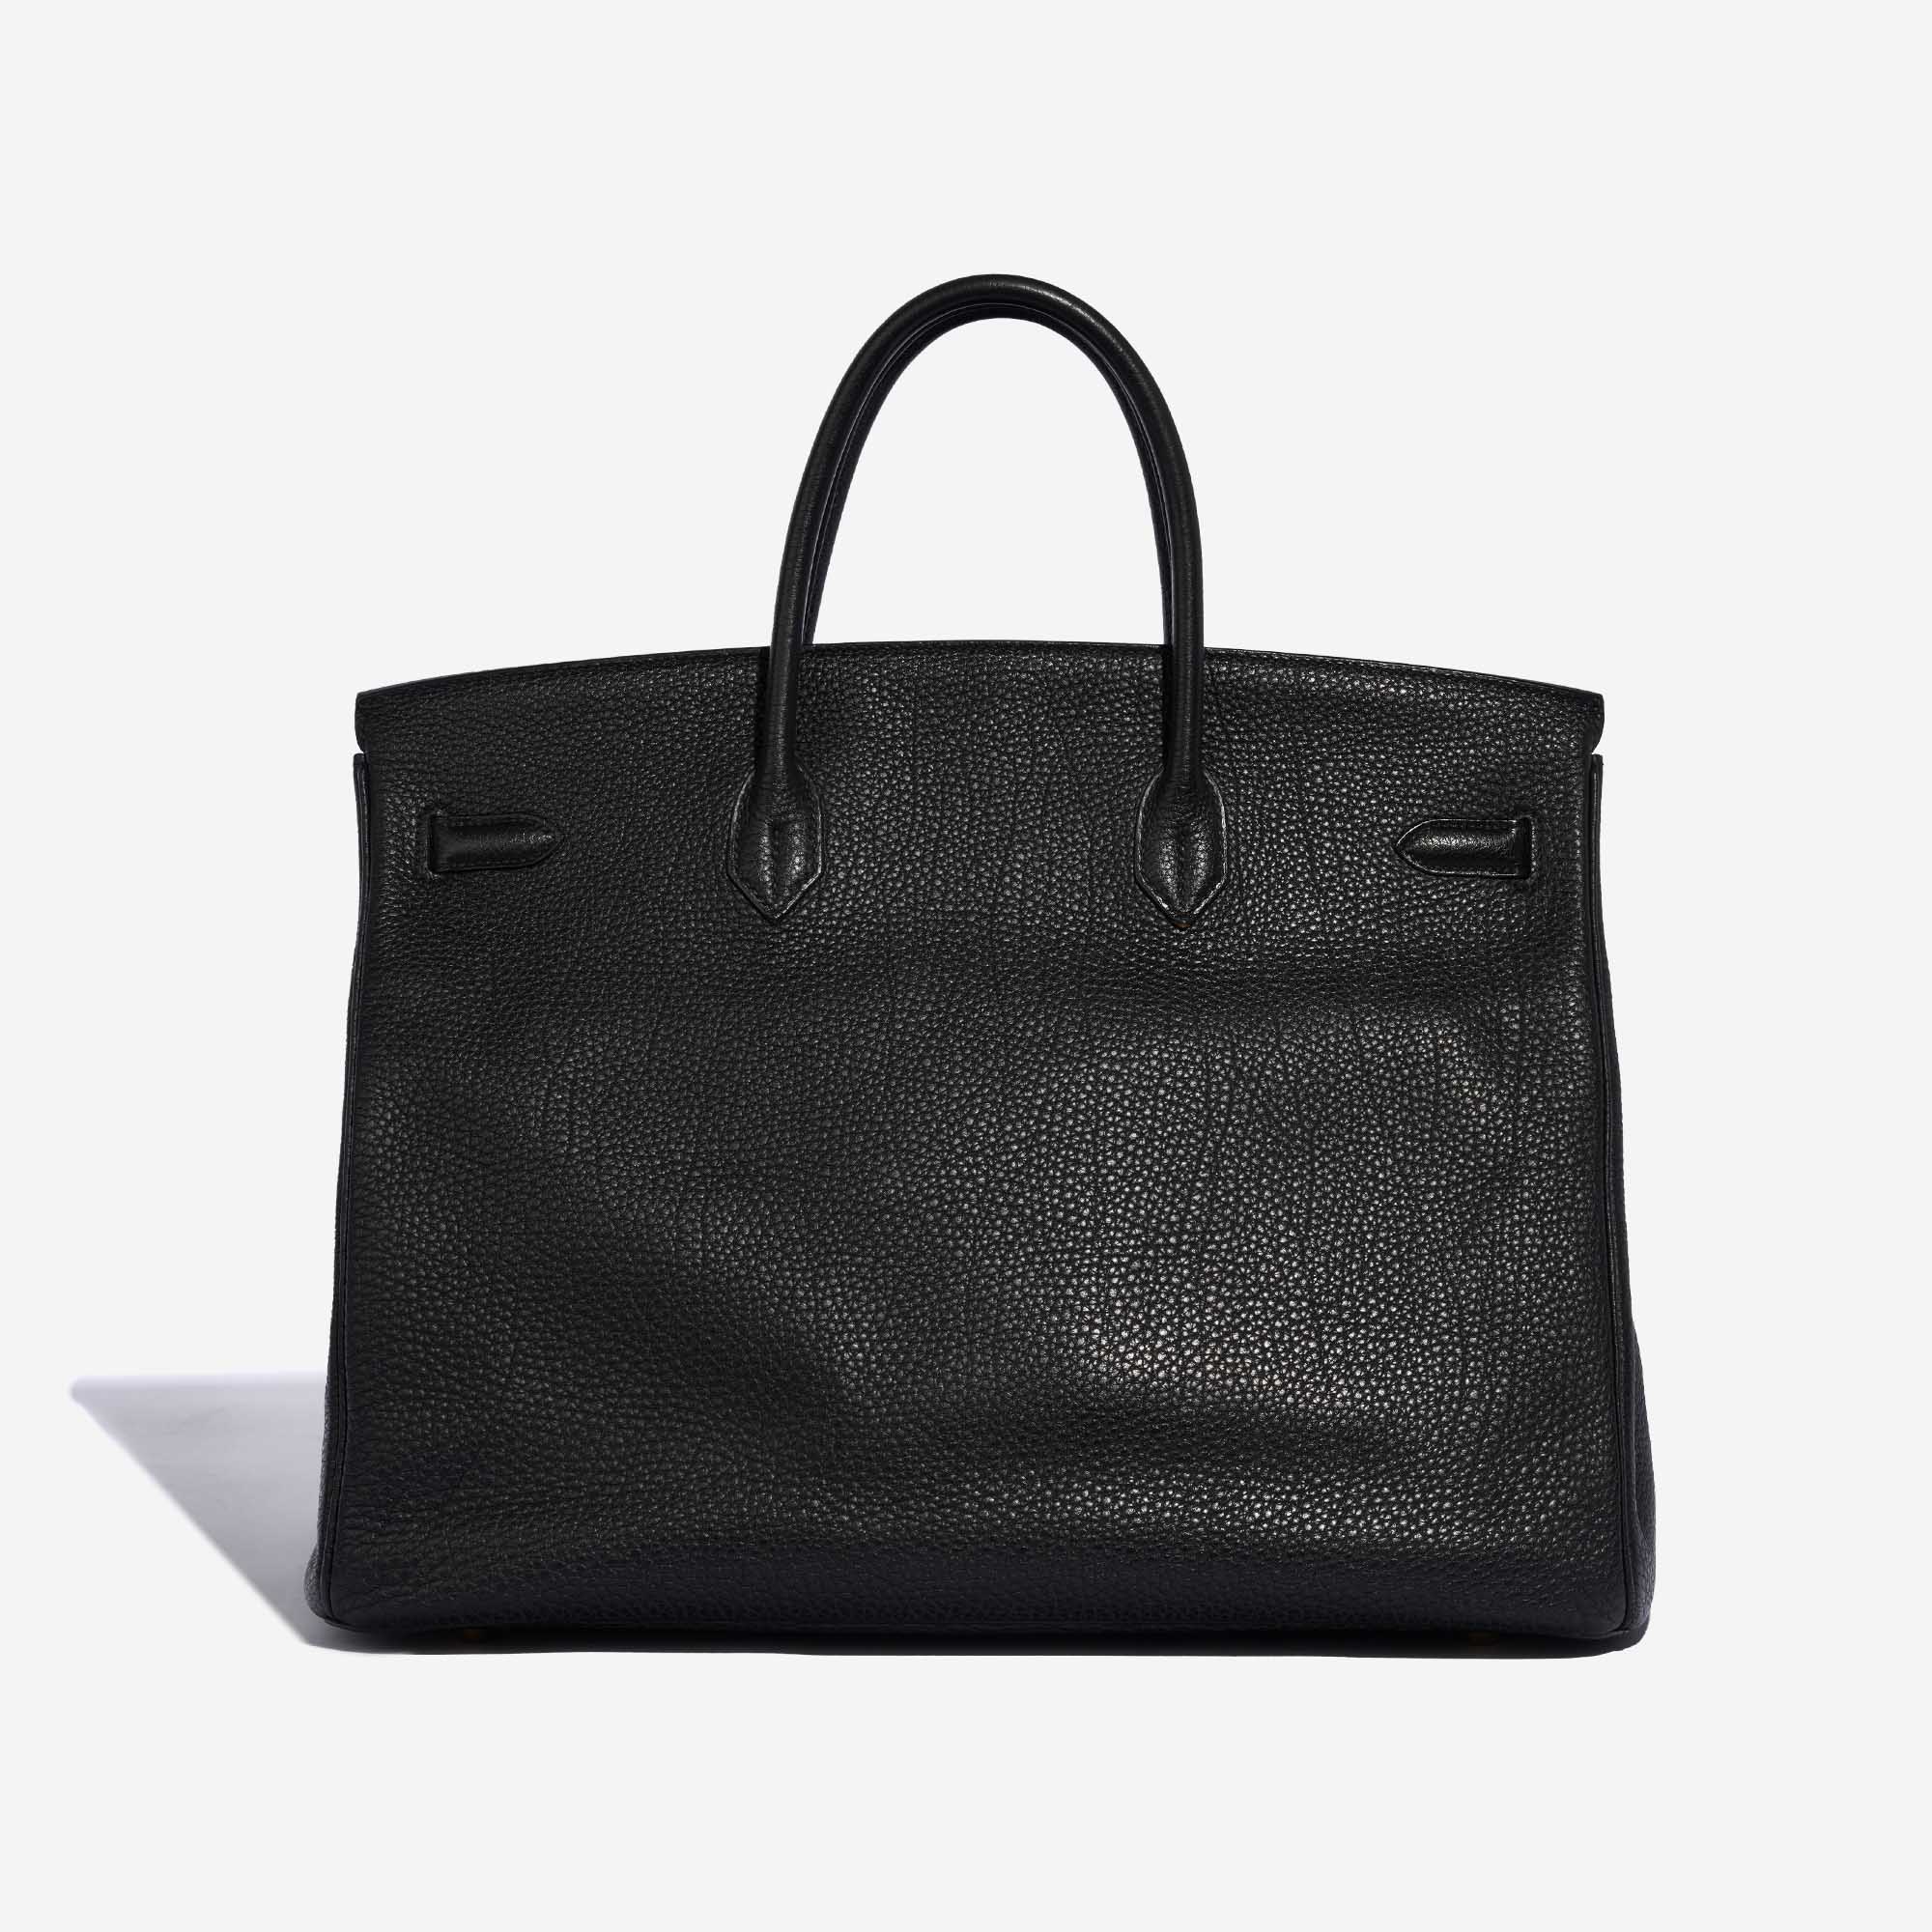 Sac Hermès Birkin 40 Togo Noir Noir Dos Vendez votre sac de créateur sur Saclab.com